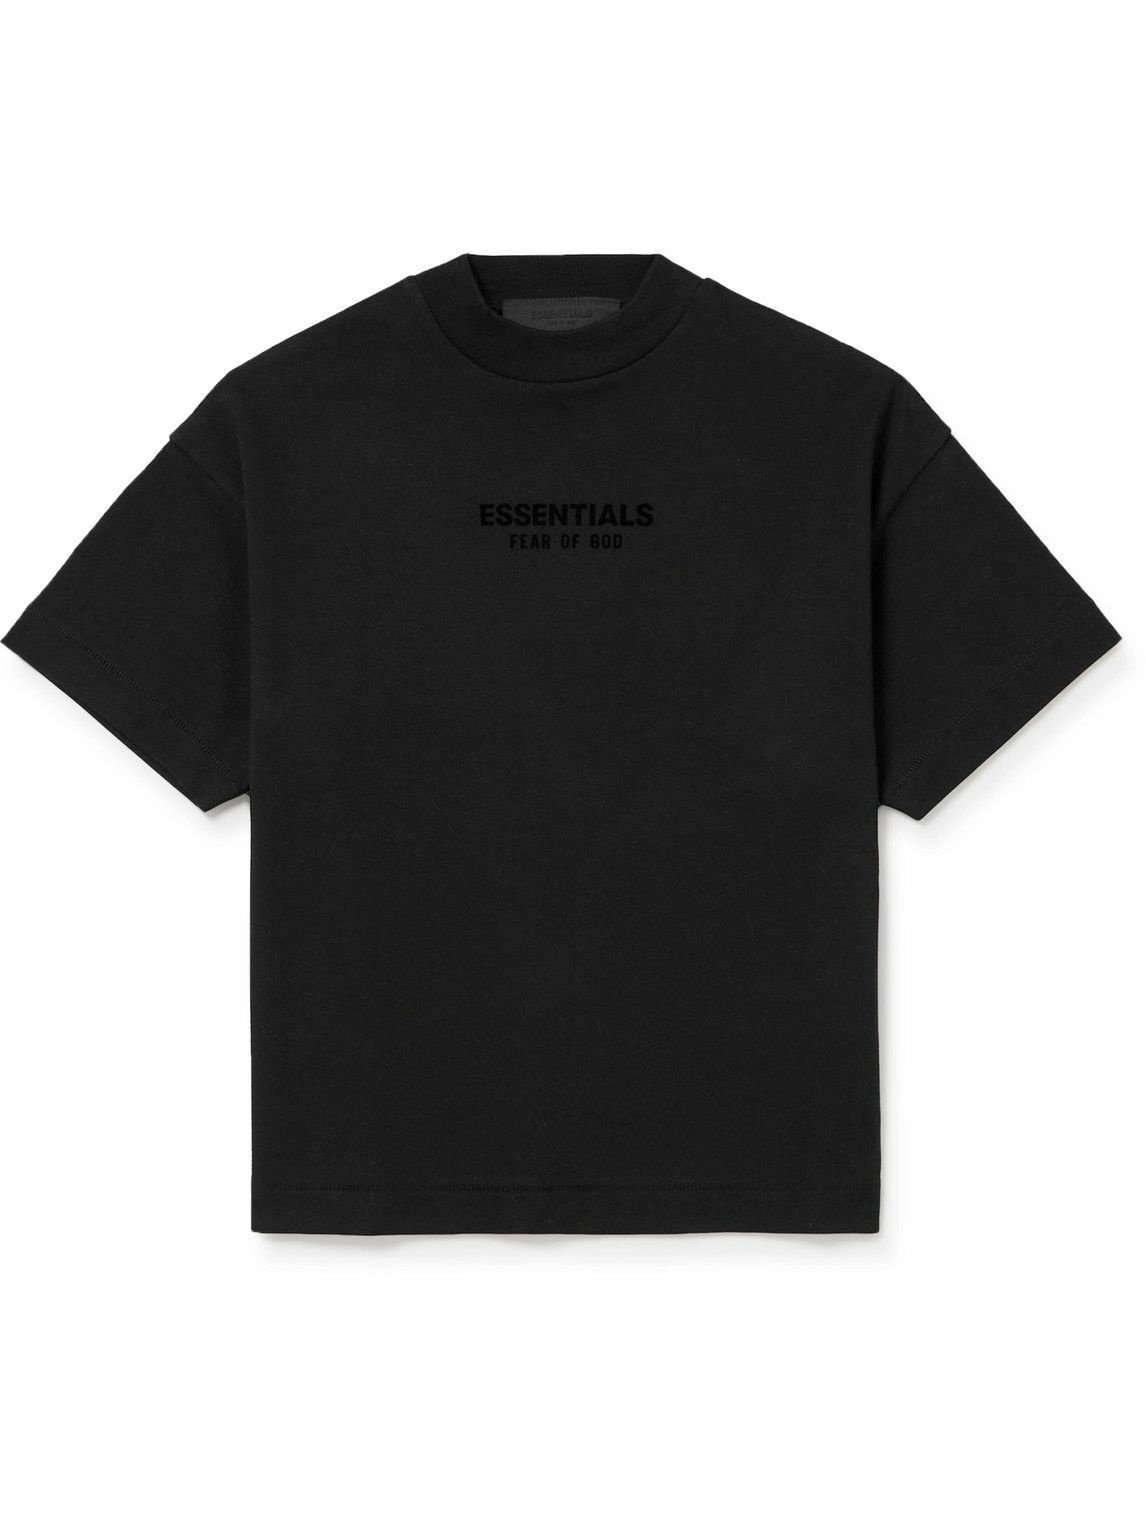 Fear of God Essentials Kids - Logo-Flocked Cotton-Jersey T-Shirt ...